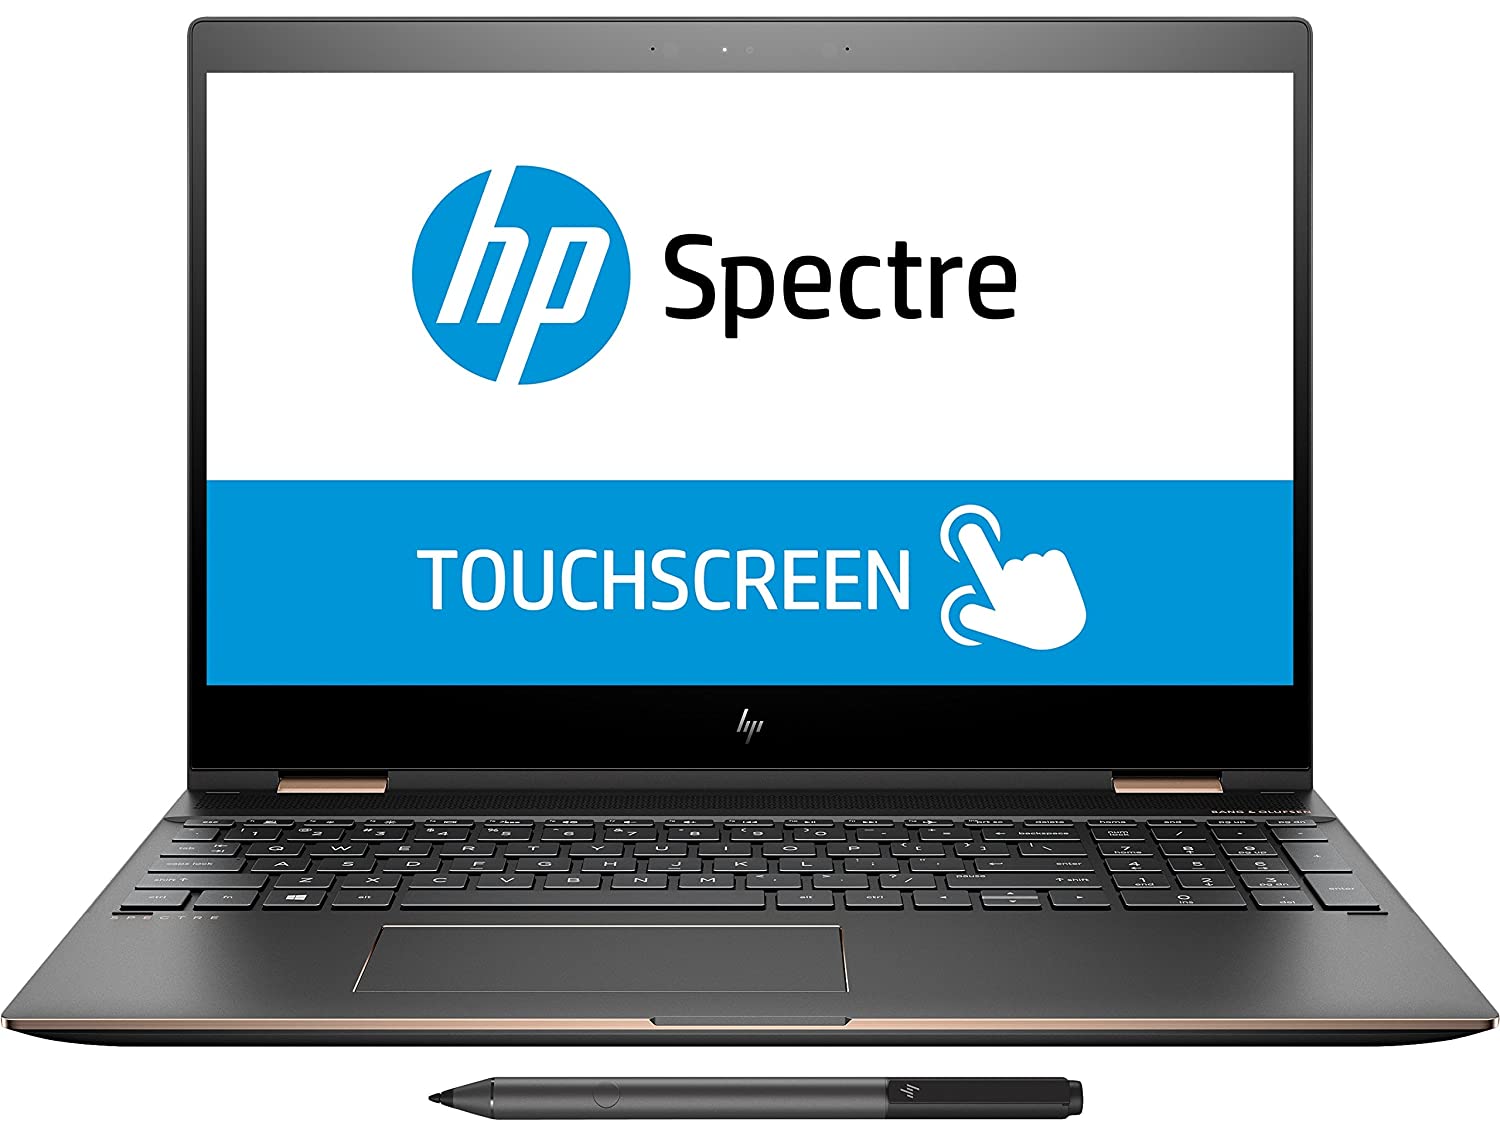 HP Spectre x360 15 inch